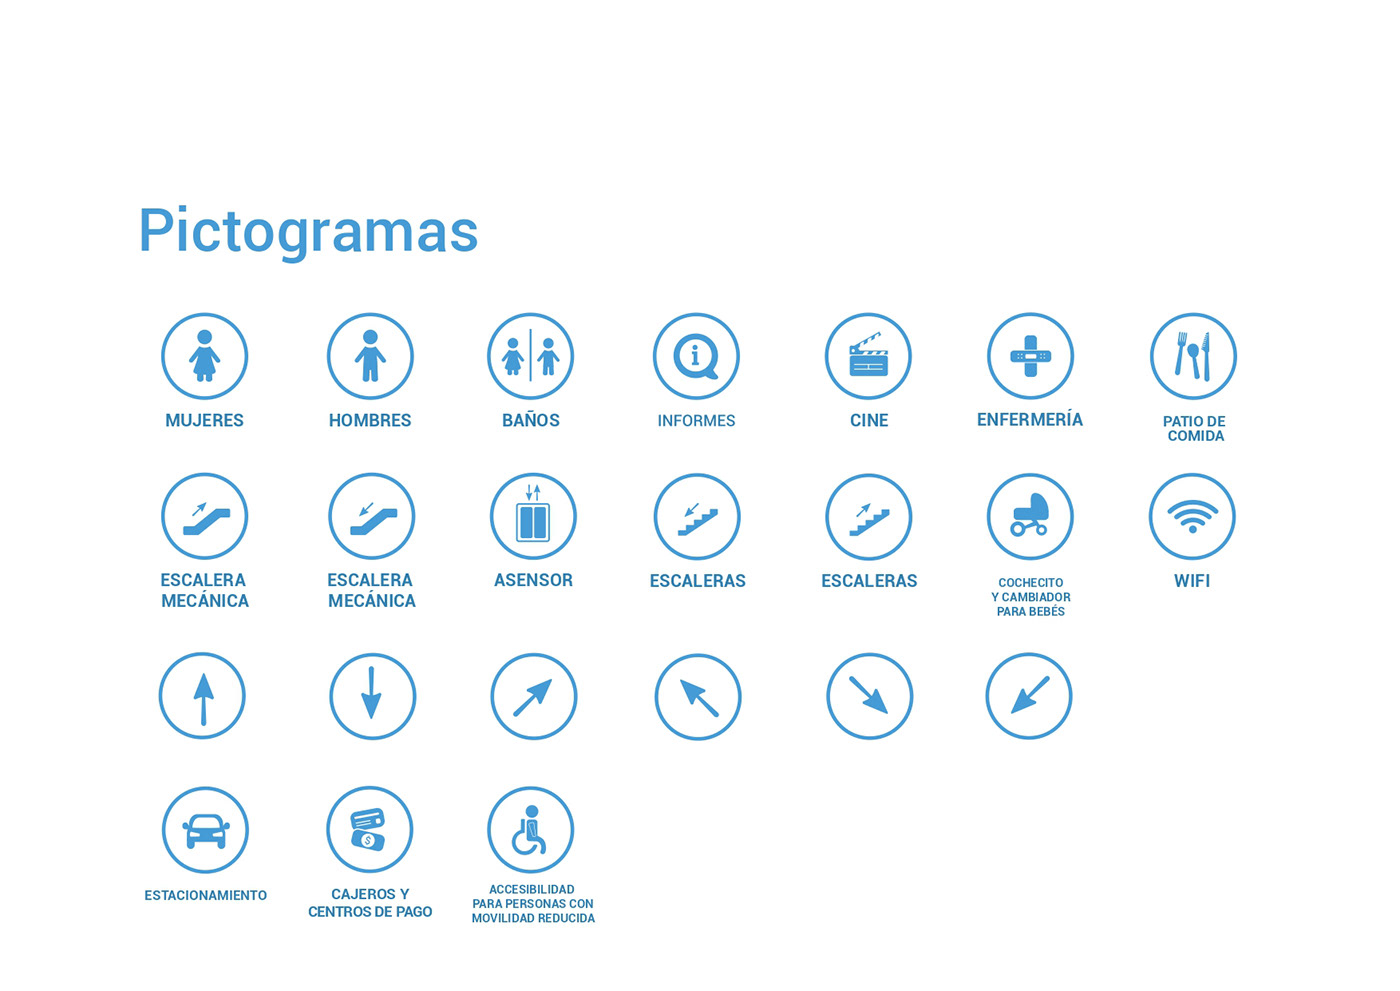 señaletica Diseño de información diseño gráfico graphic design  manual de señaletica señales pictogramas pictograms visual identity